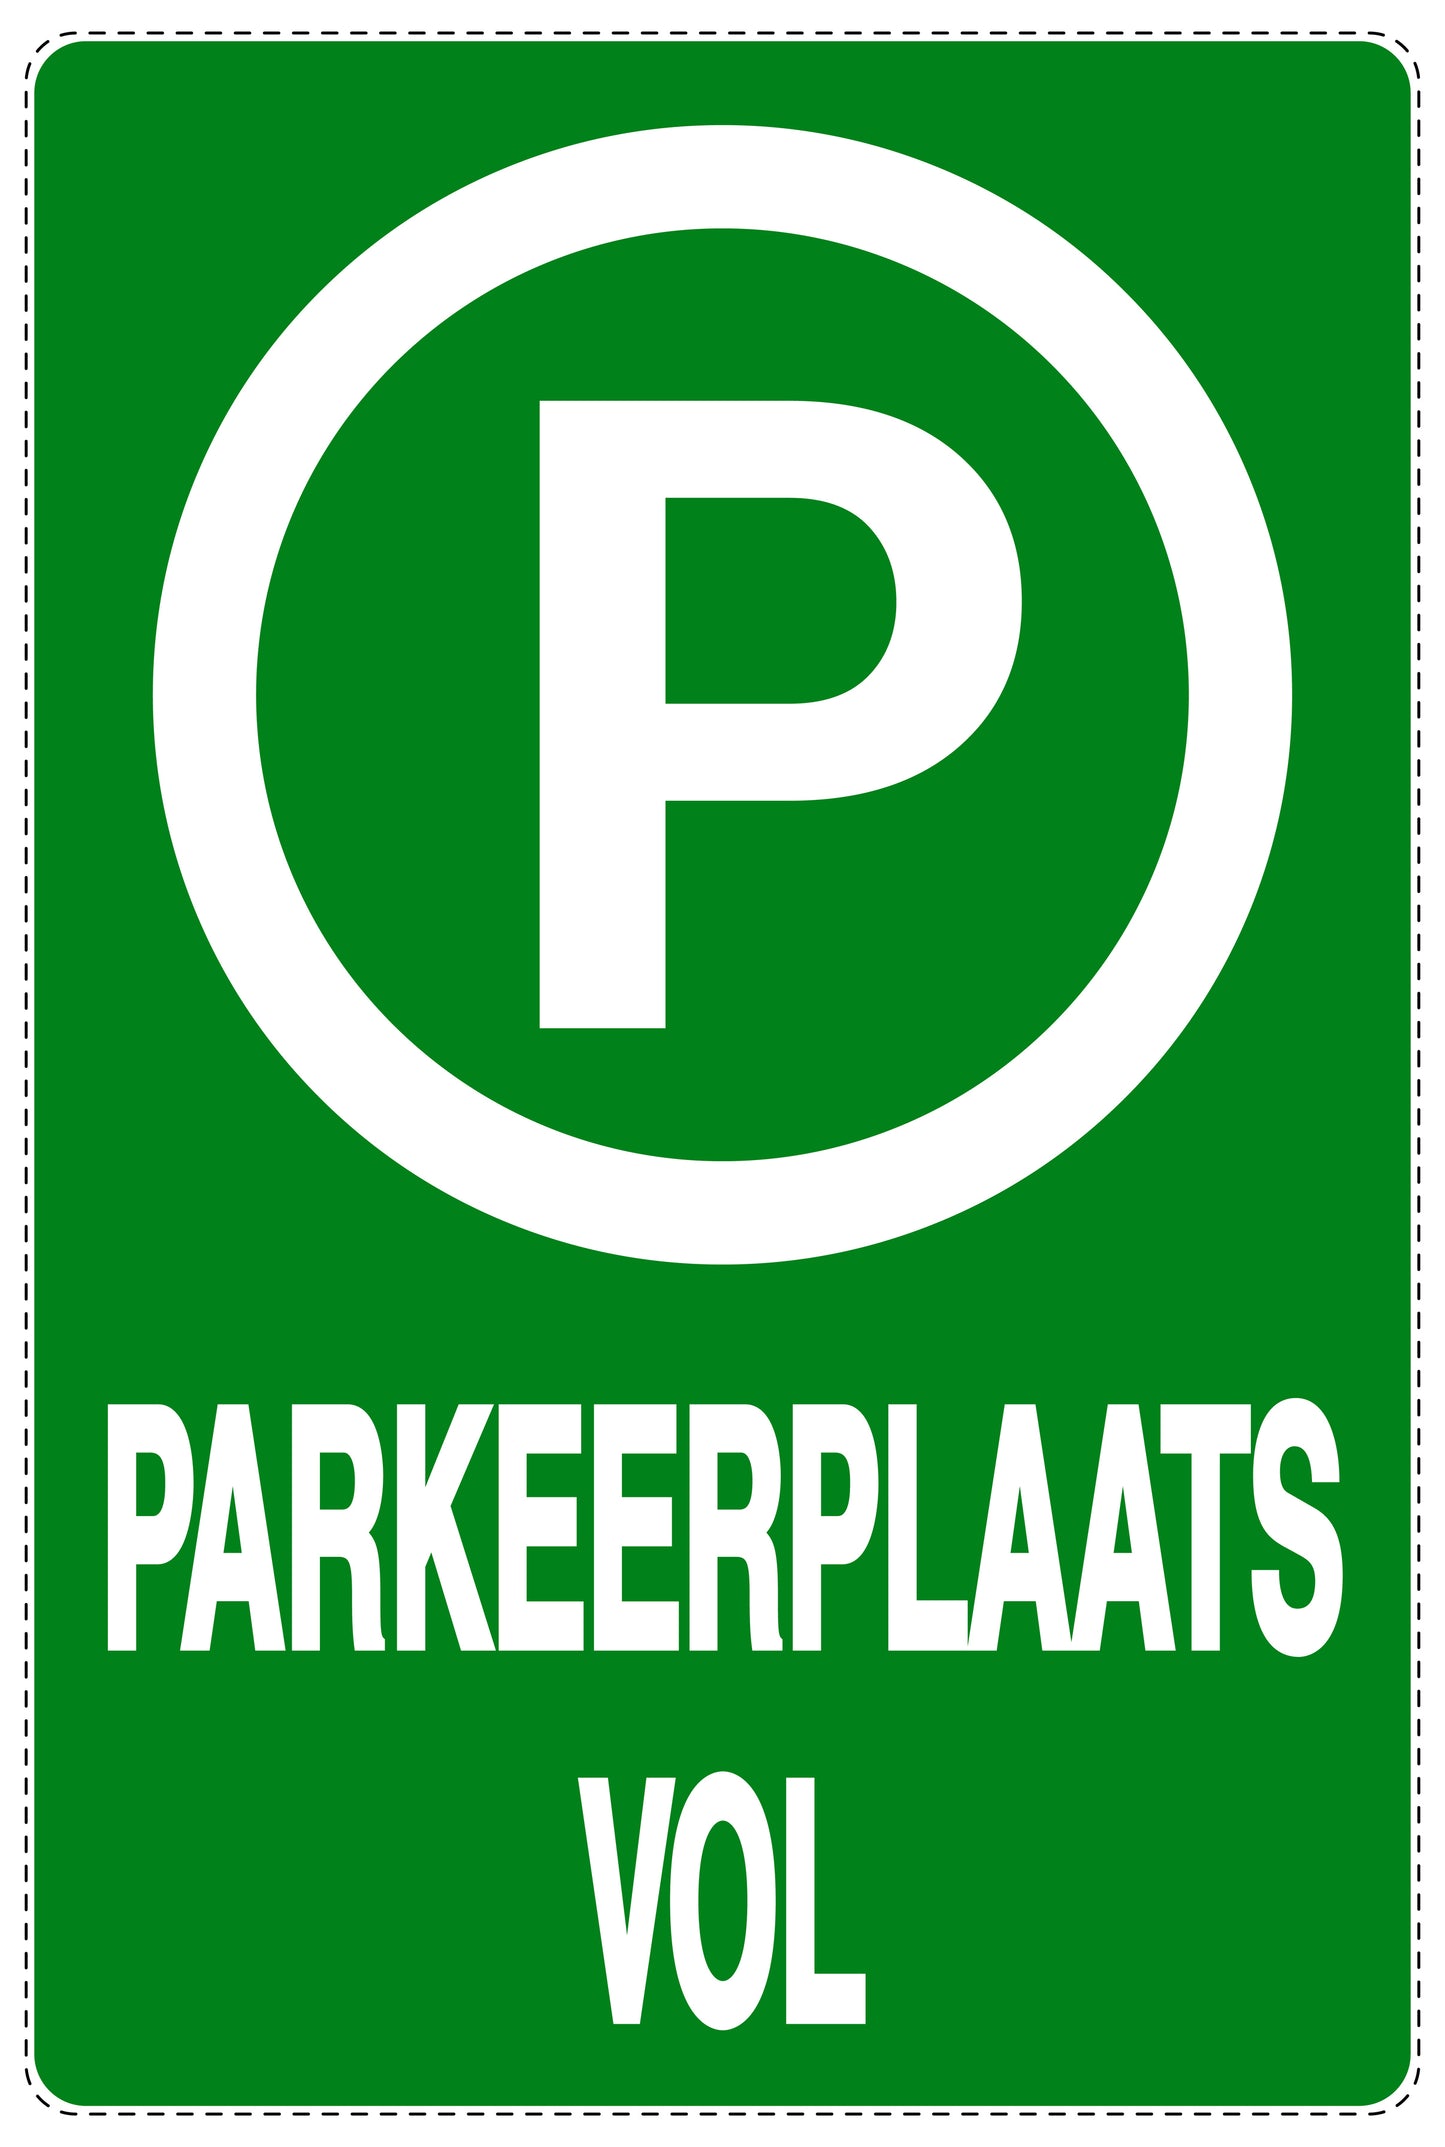 Niet parkeren Sticker "Parkeerplaats vol" EW-NPRK-2280-54